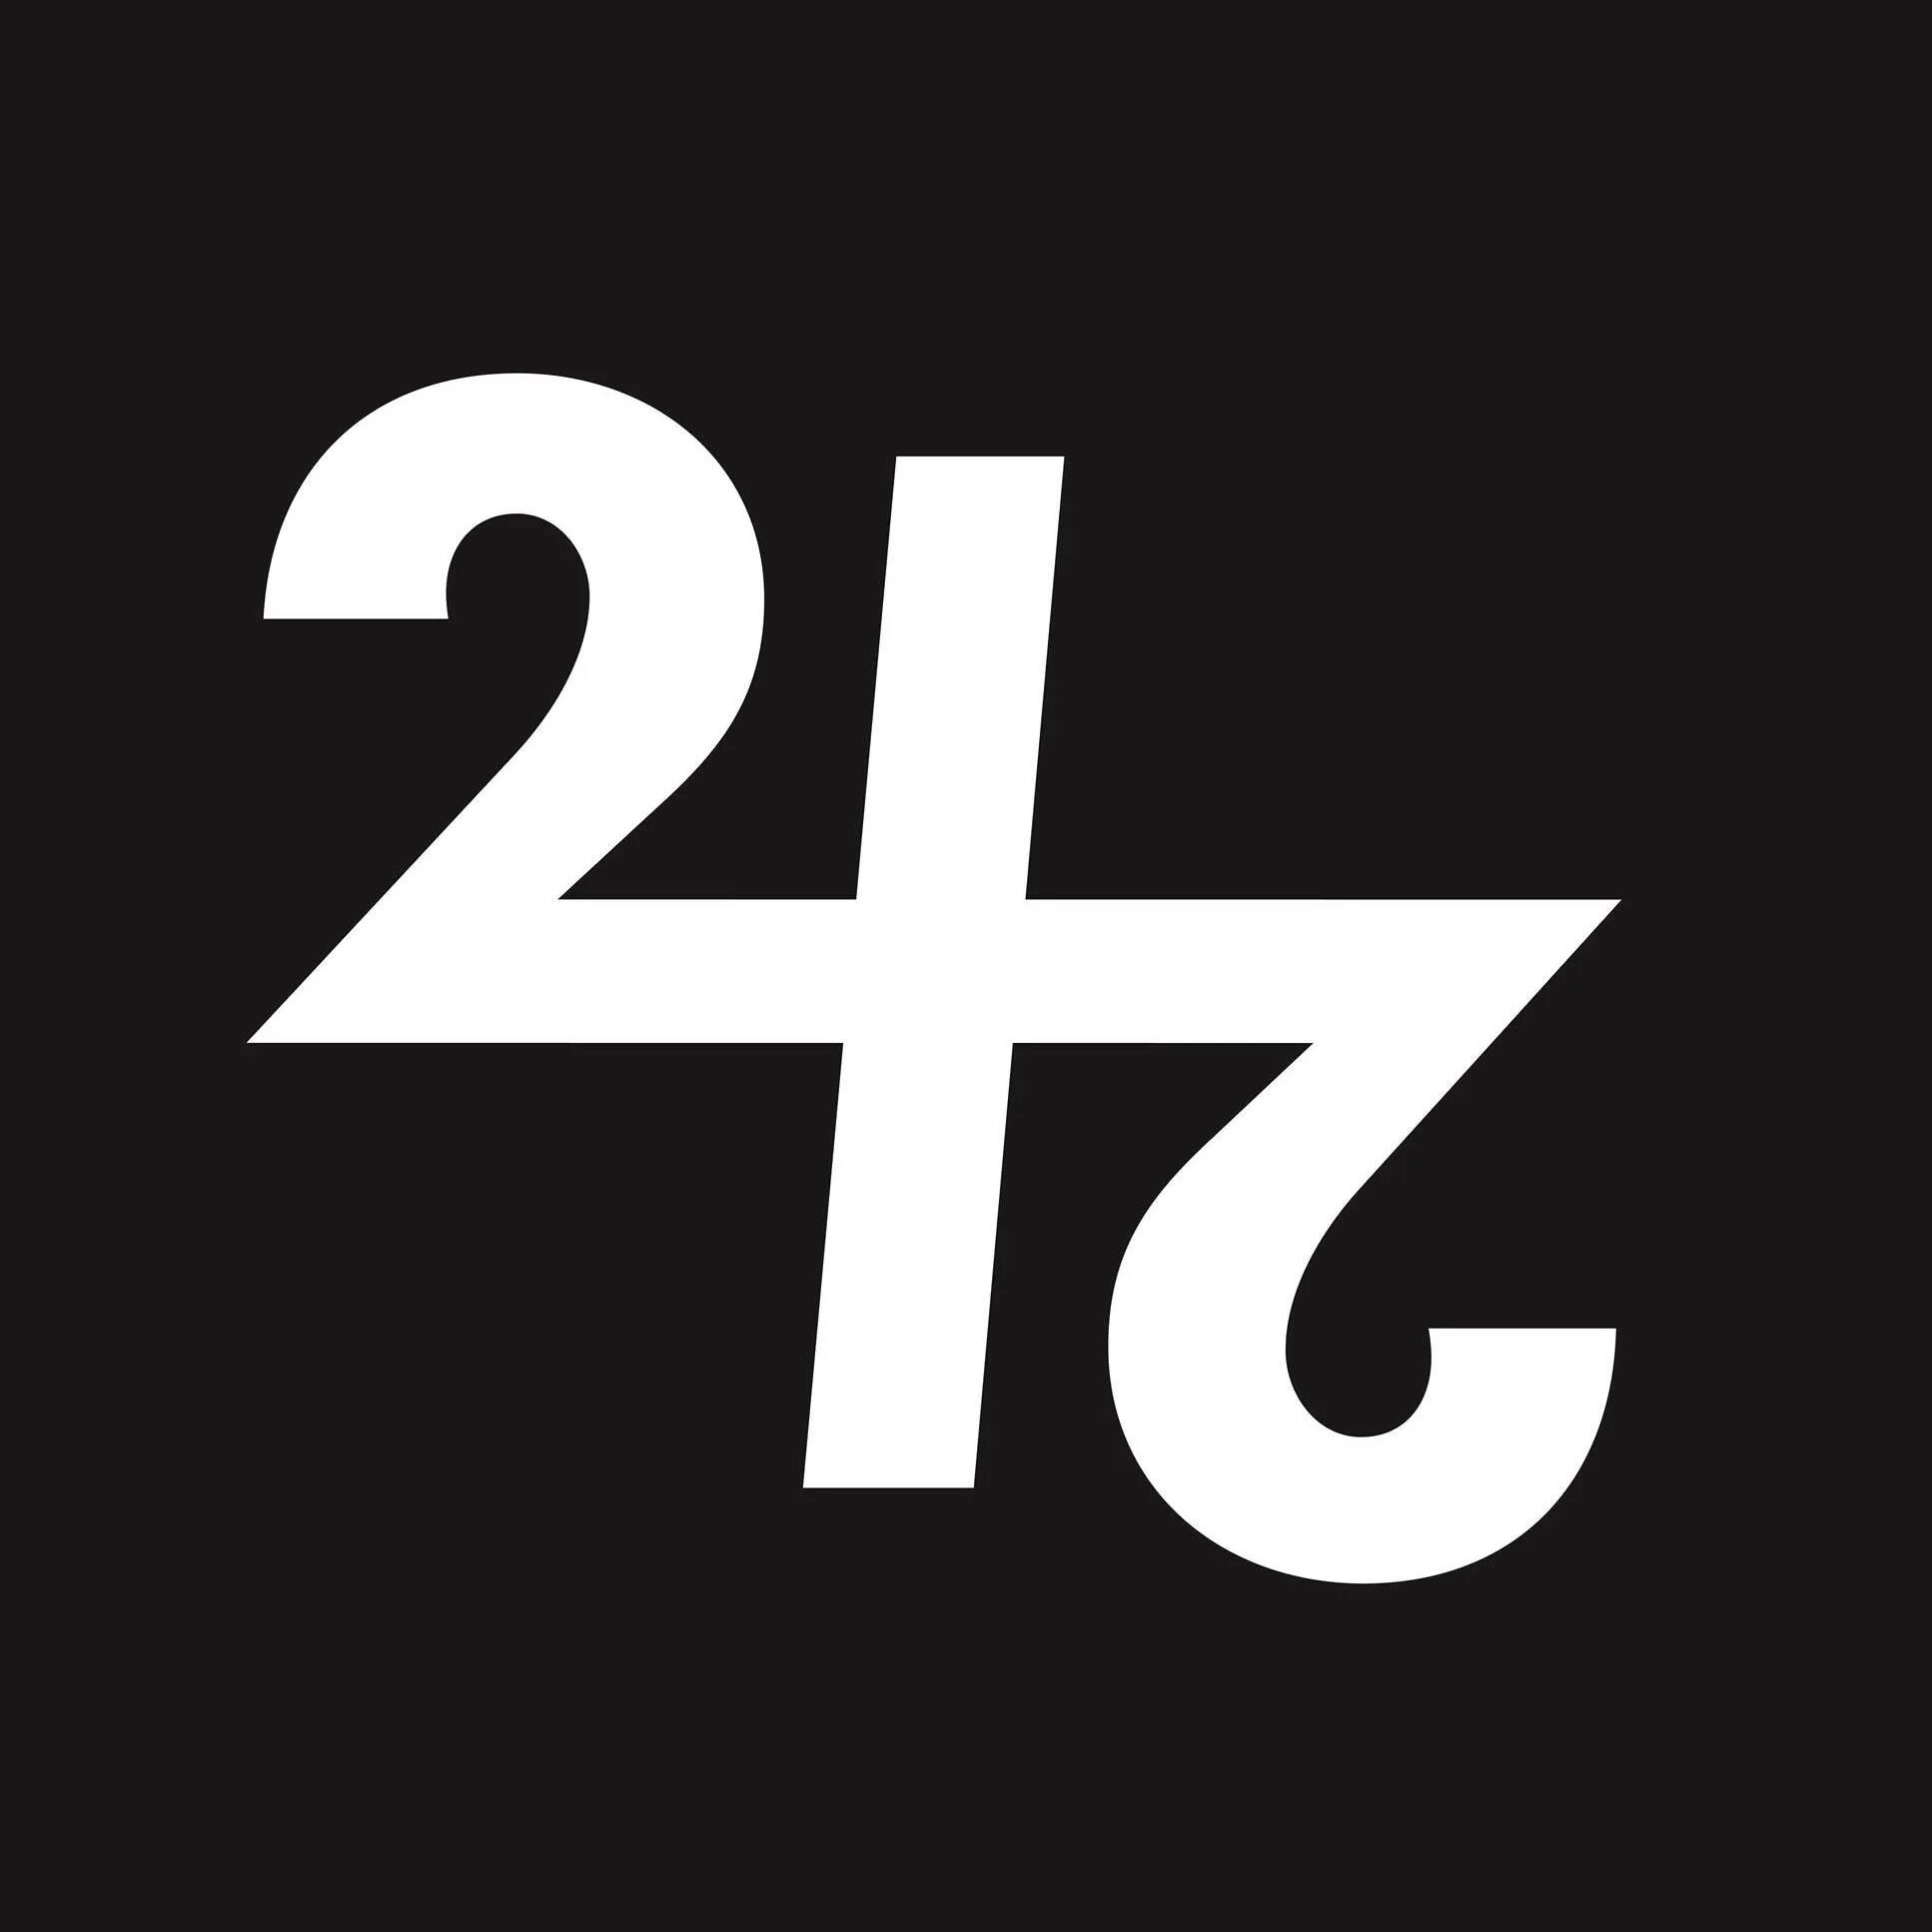 Картинка 242. Группа Front 242. Логотип 242. Front 242 лого.